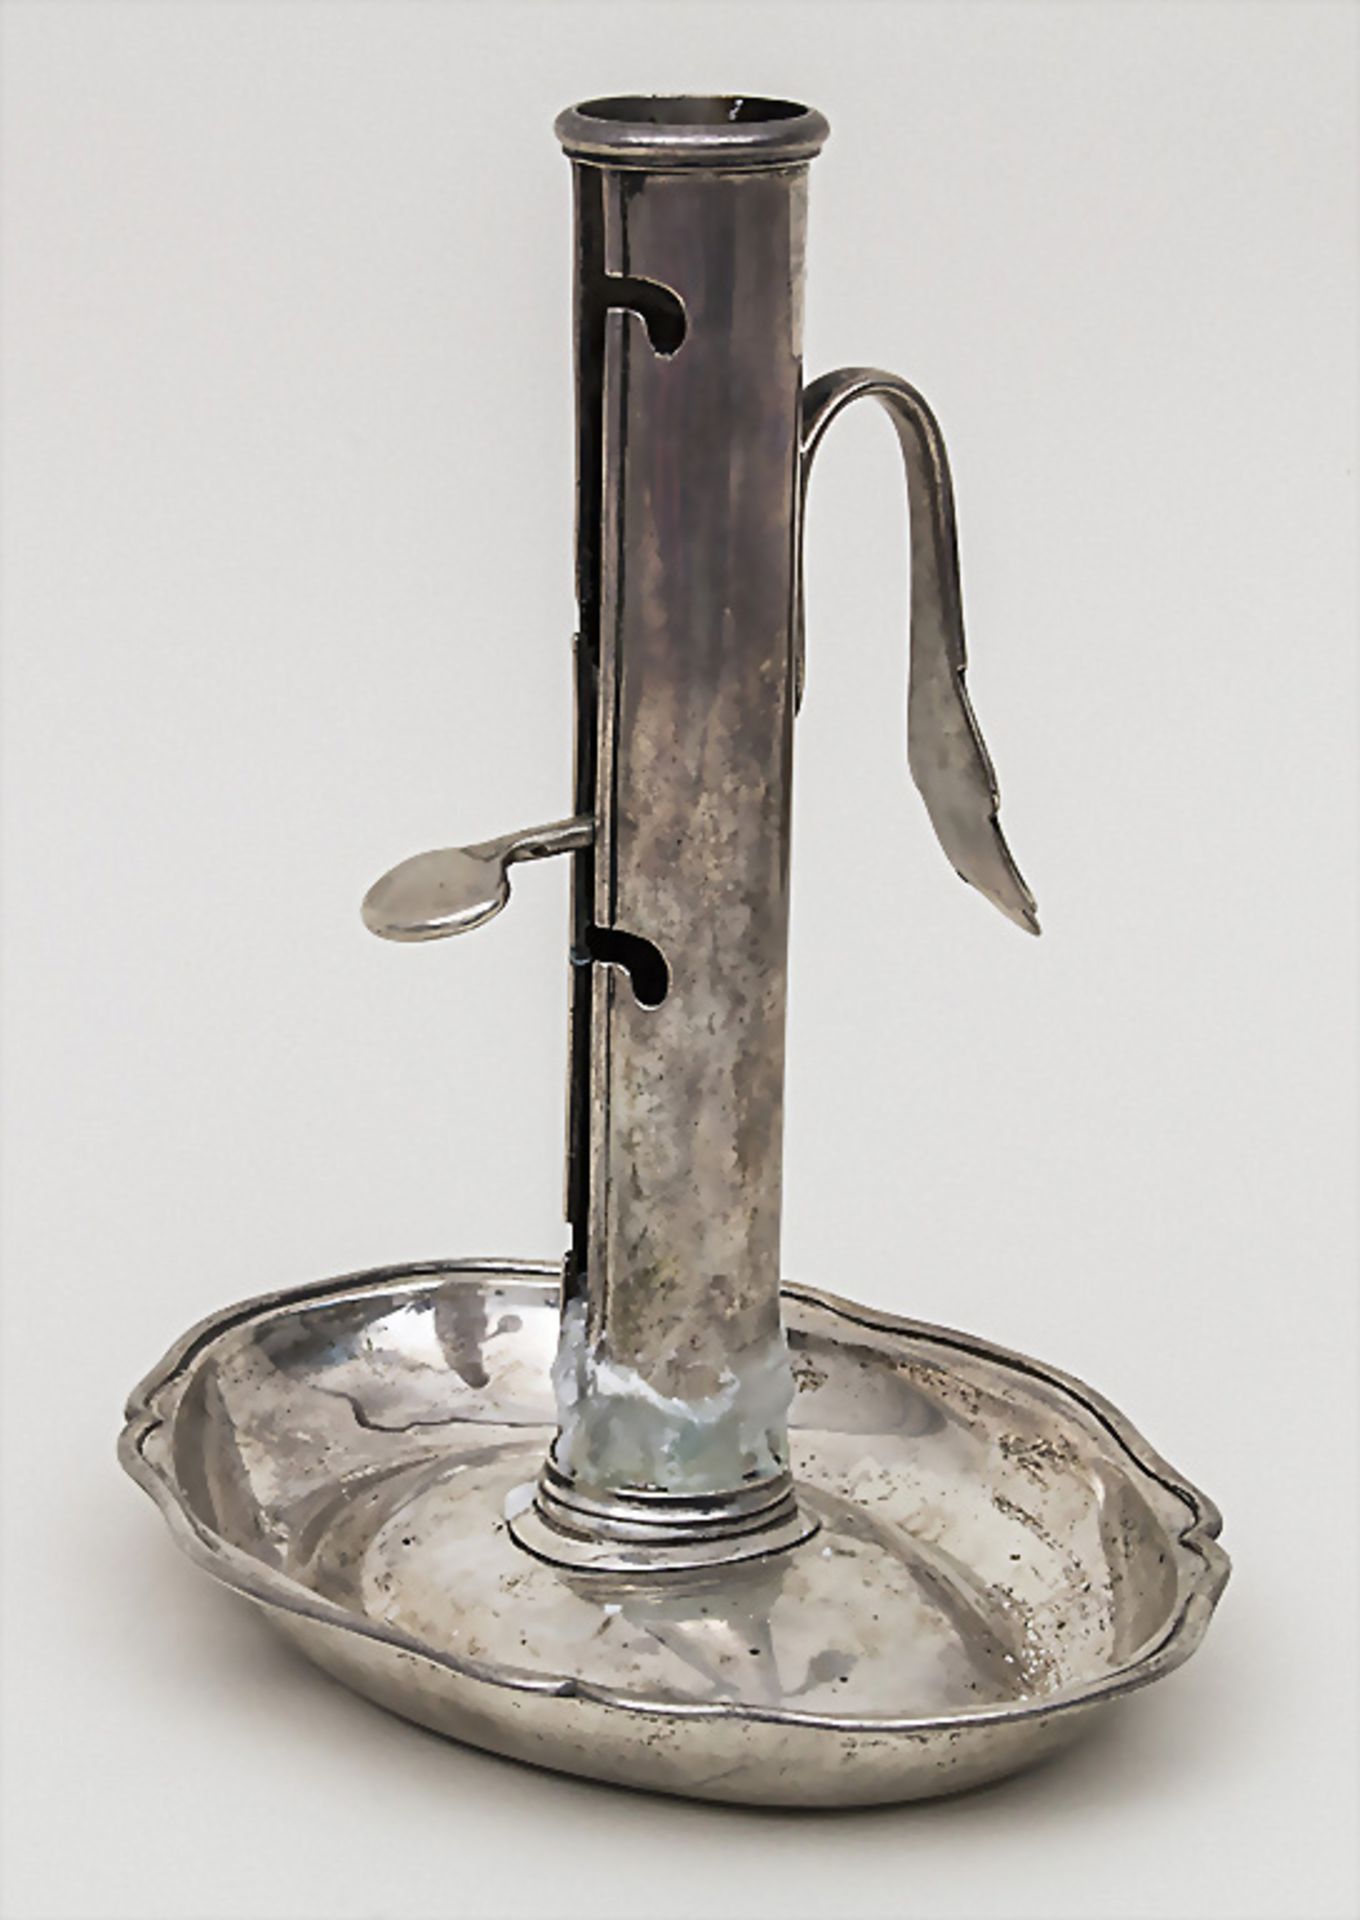 Handleuchter / A portable candlestick, Lausanne, um 1780